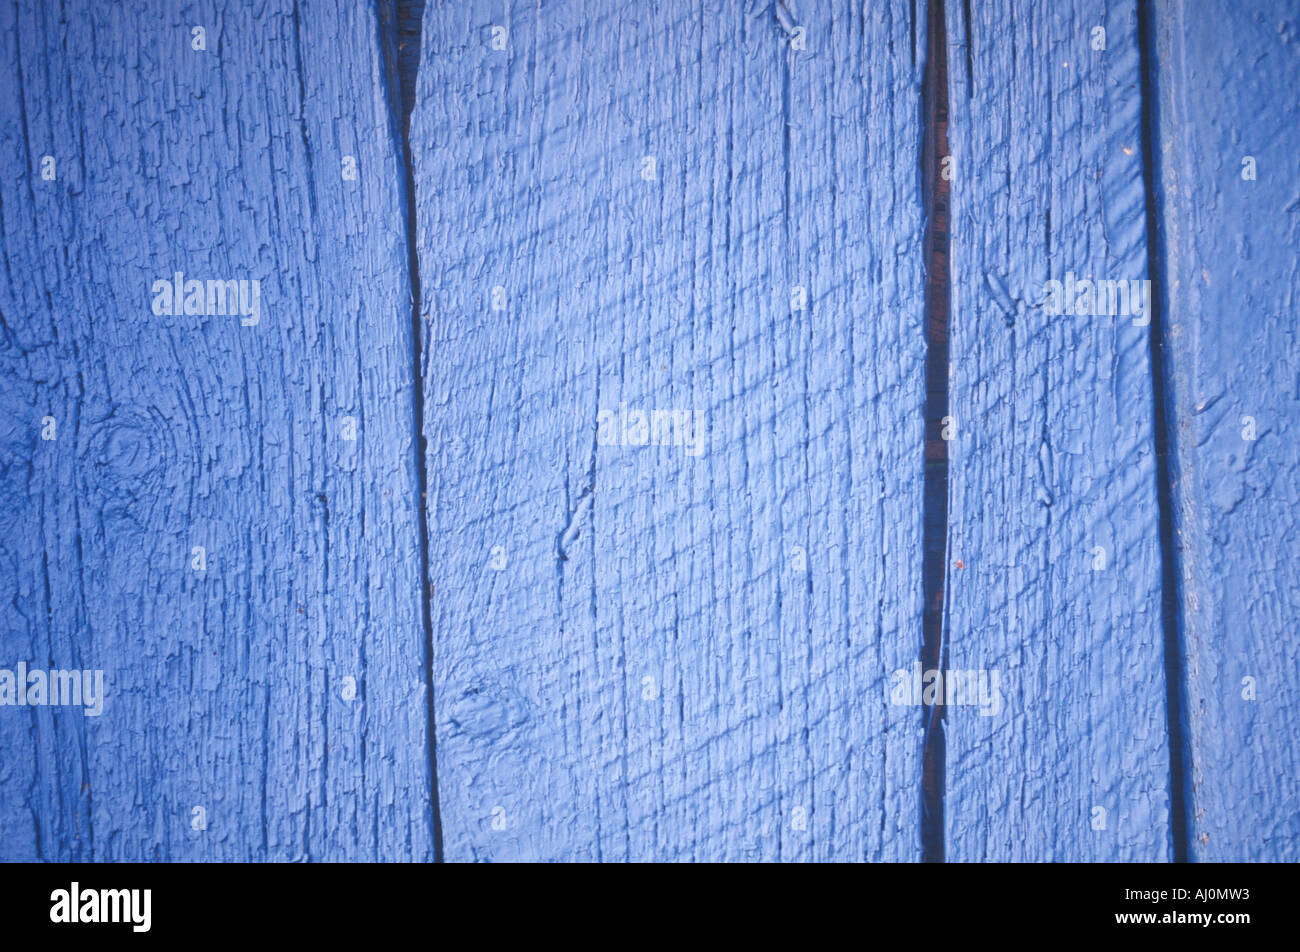 Dettaglio di una staccionata in legno Greer Garson Ranch Foto Stock